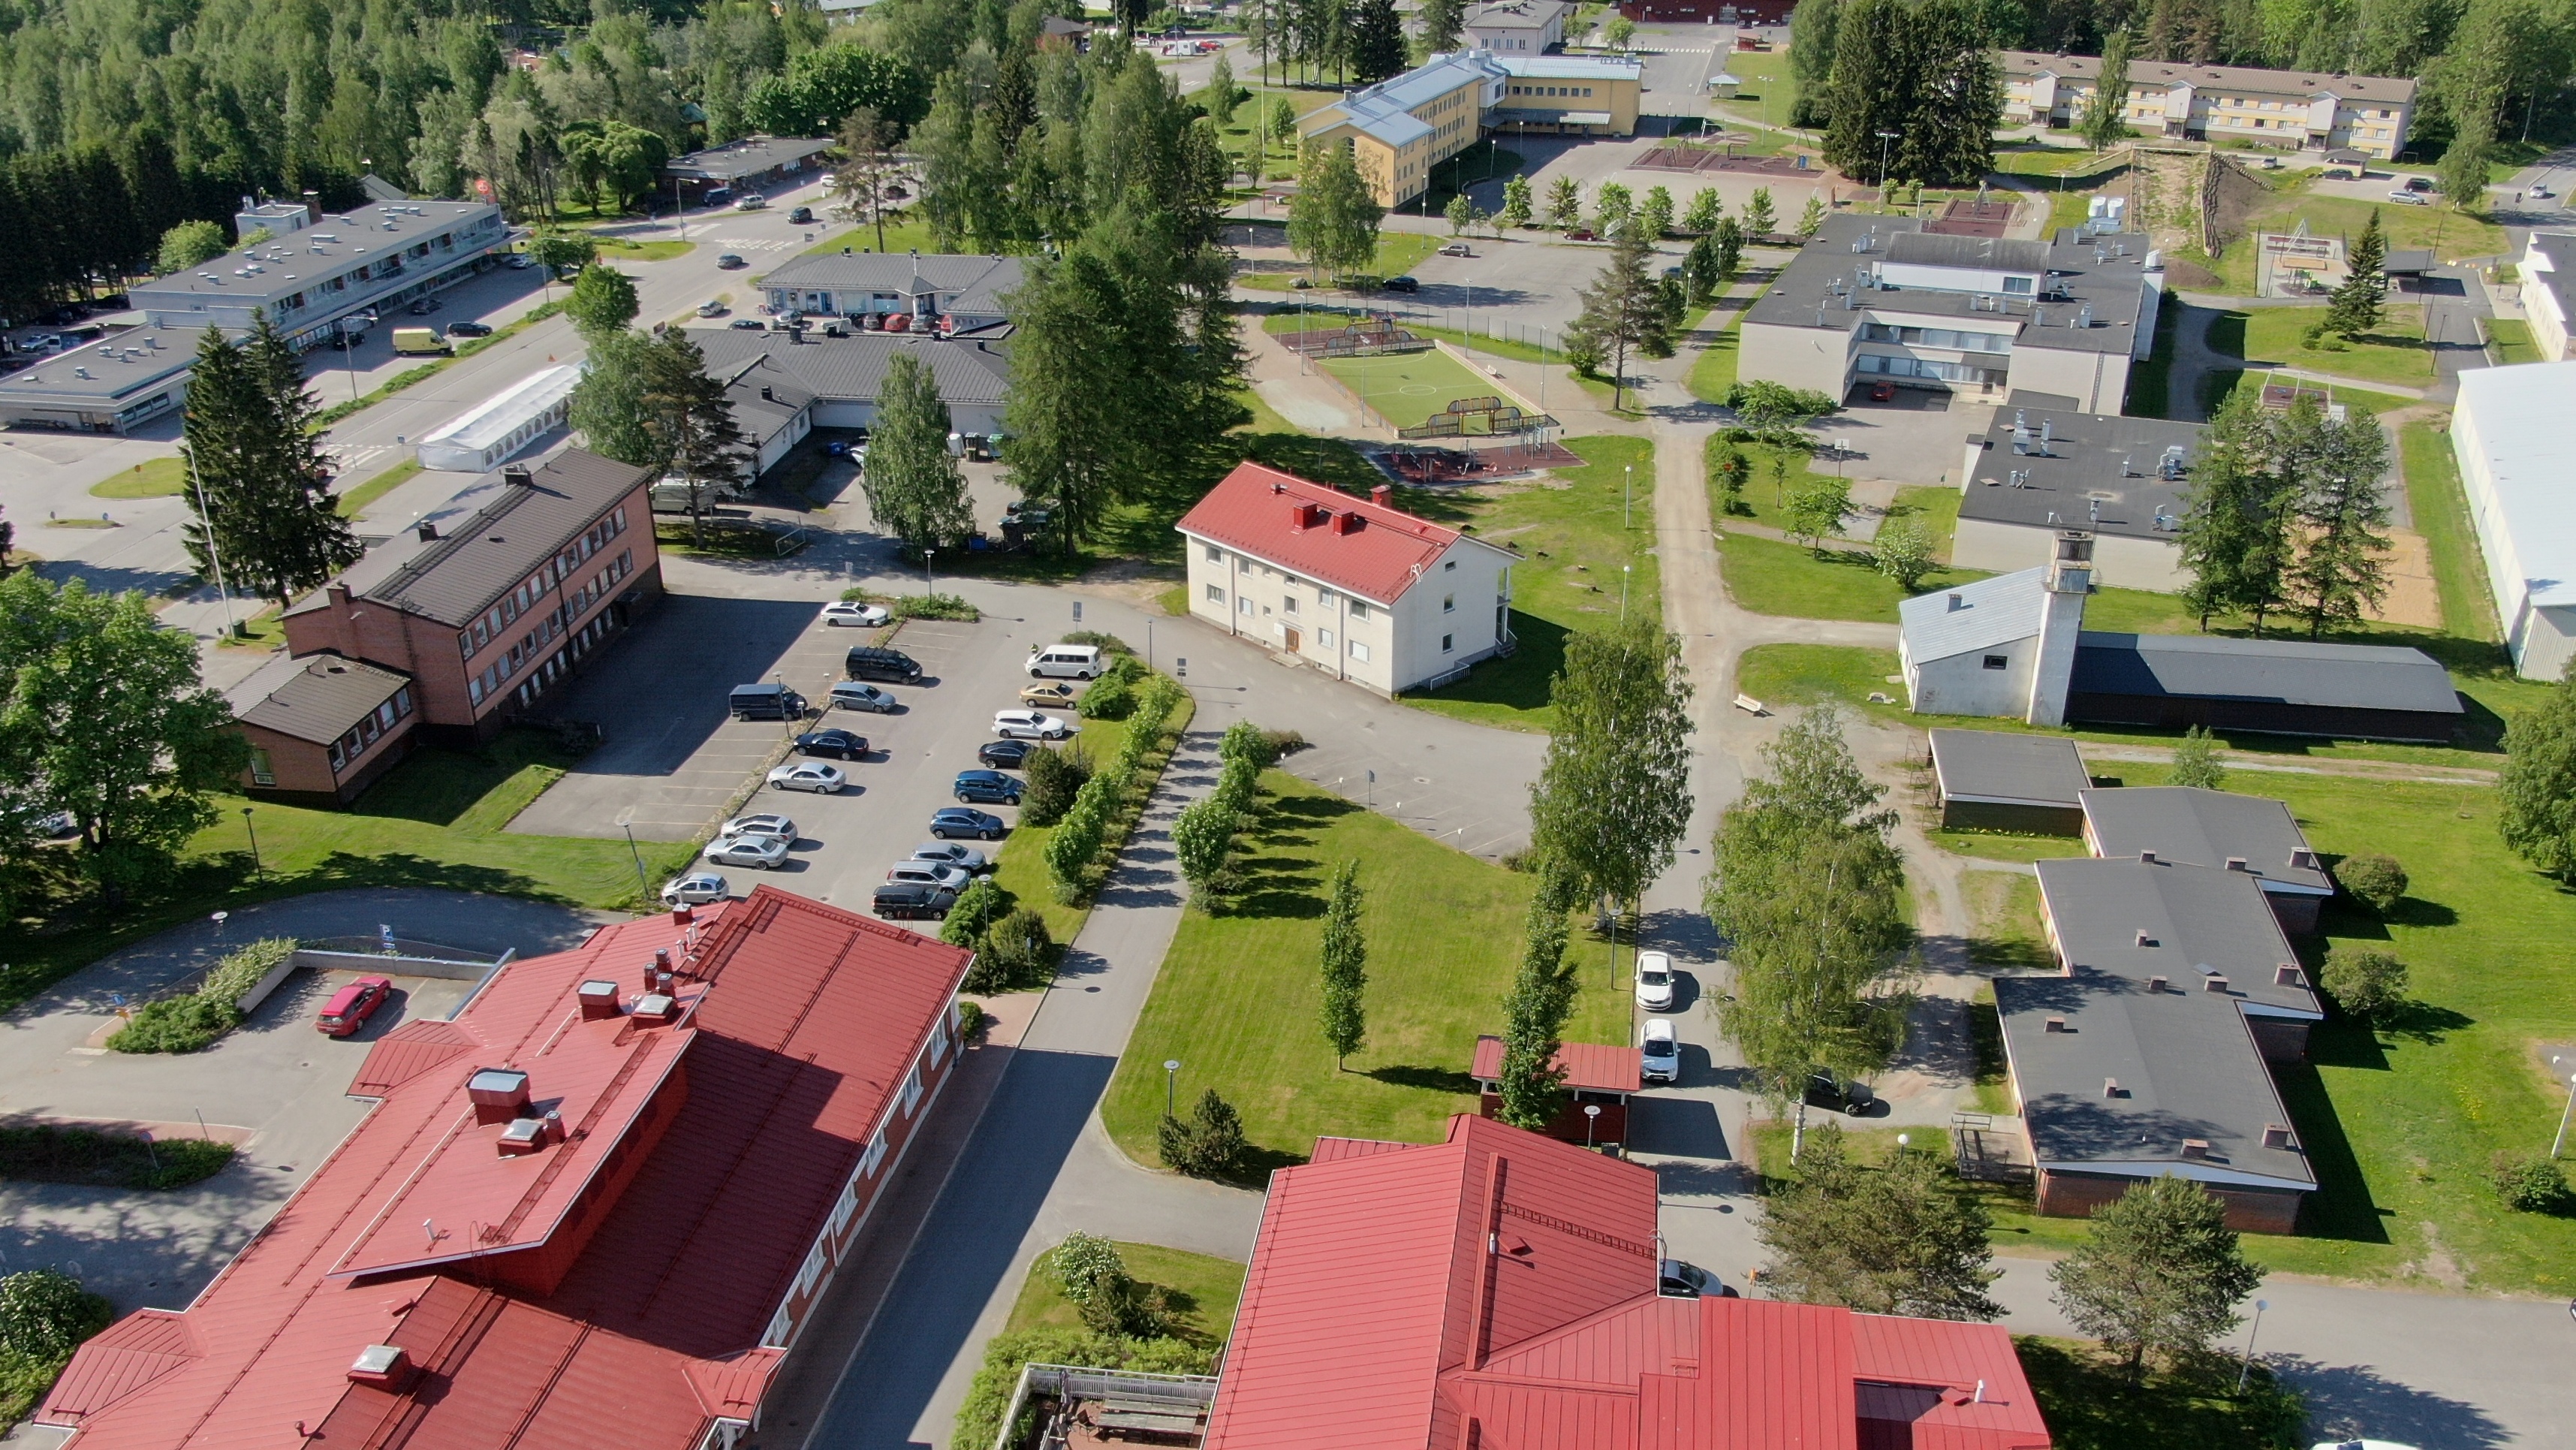 Polvijärven keskusta-aluetta, jossa näkyy Y-kortteli, vanha kunnantalo ja muita kunnanvirastorakennuksia, koulu sekä parkkipaikka. Kuvassa olevalle alueelle rakennetaan 60-paikkainen asumispalveluyksikkö.